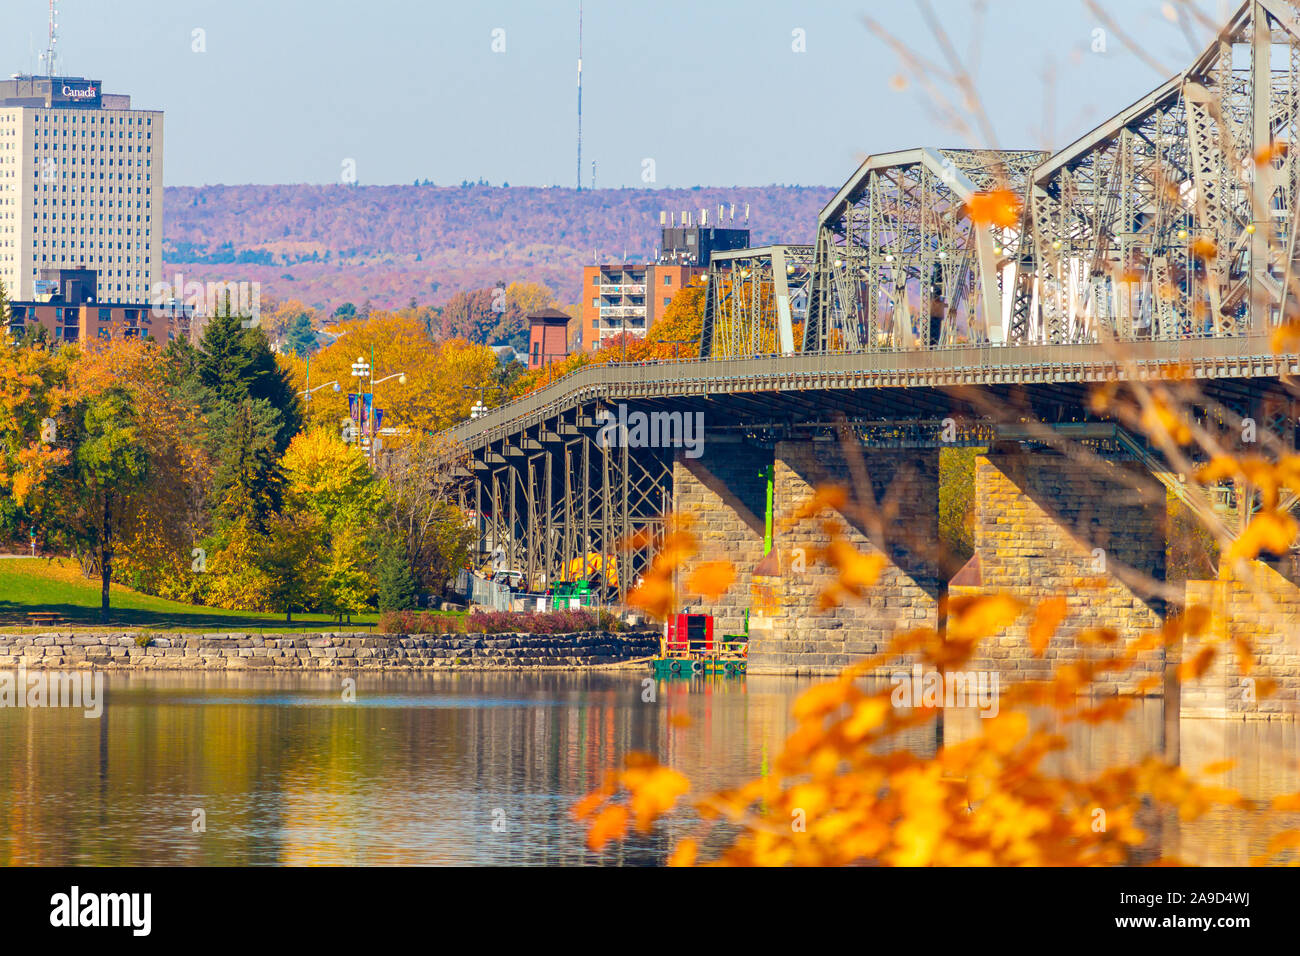 OTTAWA, Ontario, Canada - 21 ottobre 2019: Il Royal Alexandra interprovinciale, il ponte di collegamento a Ottawa Gatineau, Québec oltre il fiume Ottawa. Foto Stock